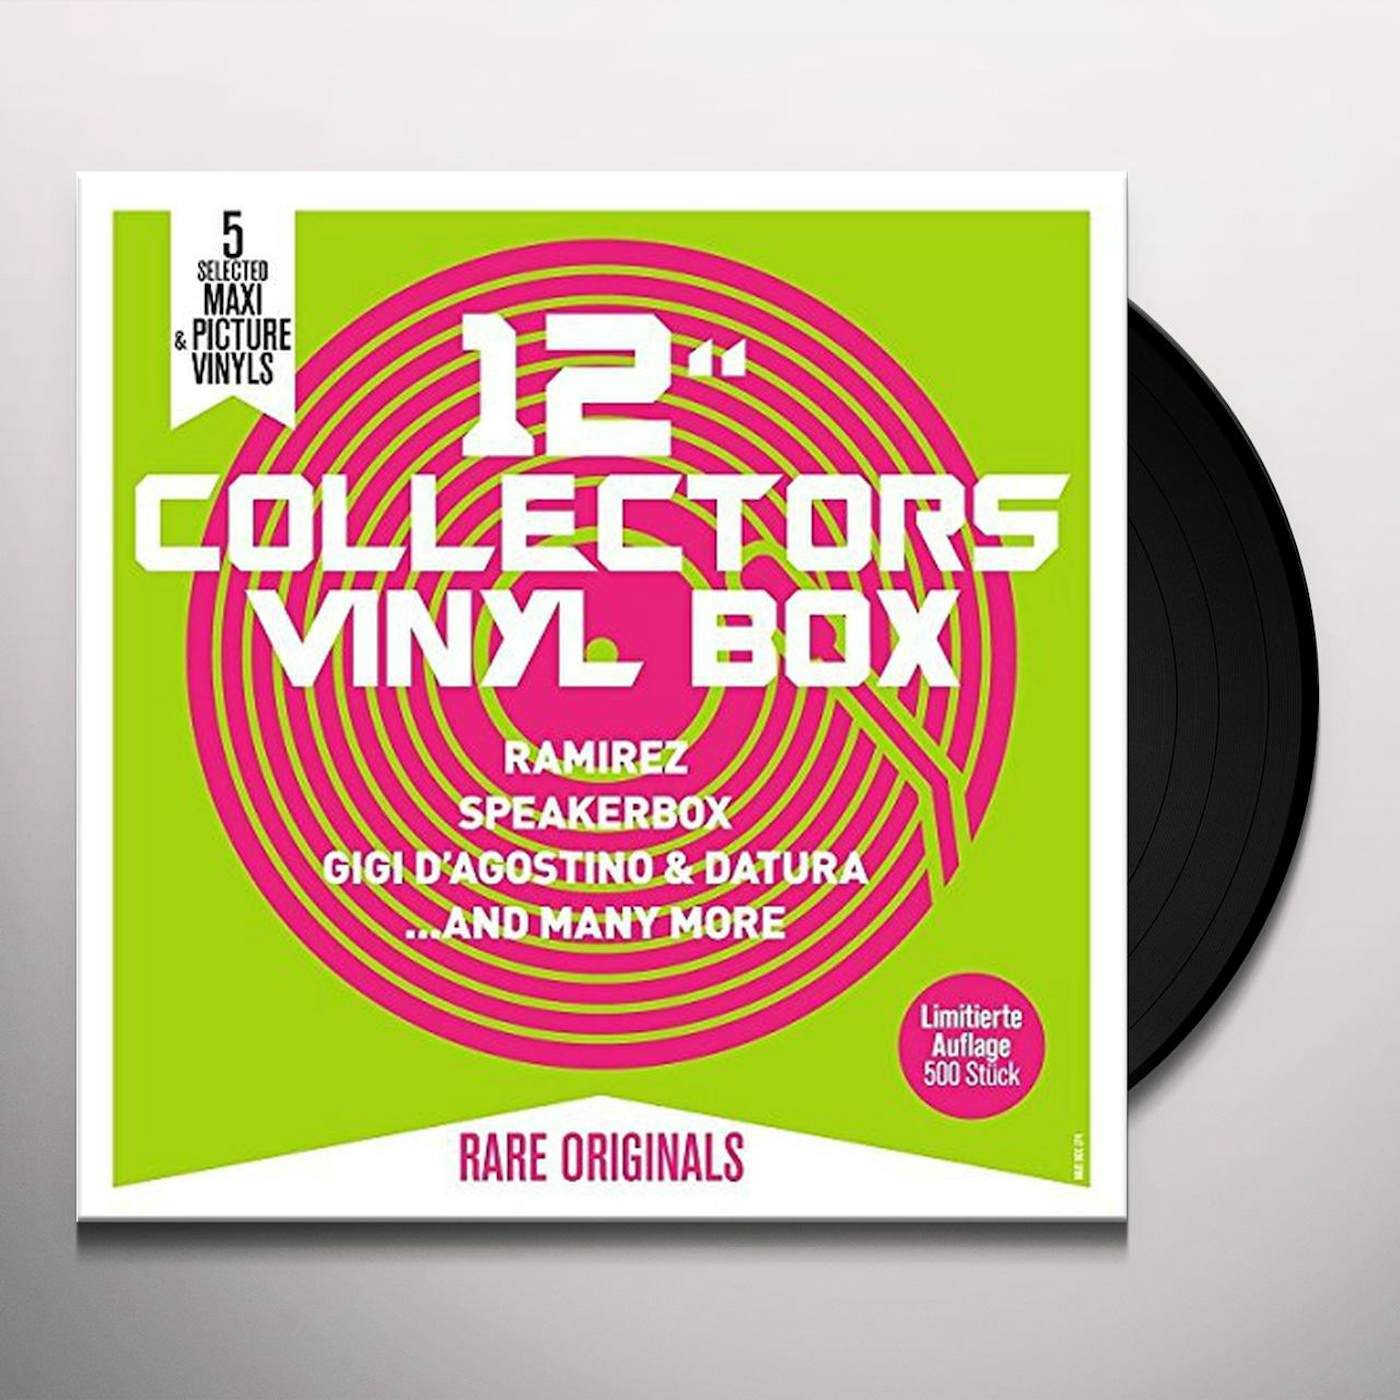 12 Collectors Vinyl Box